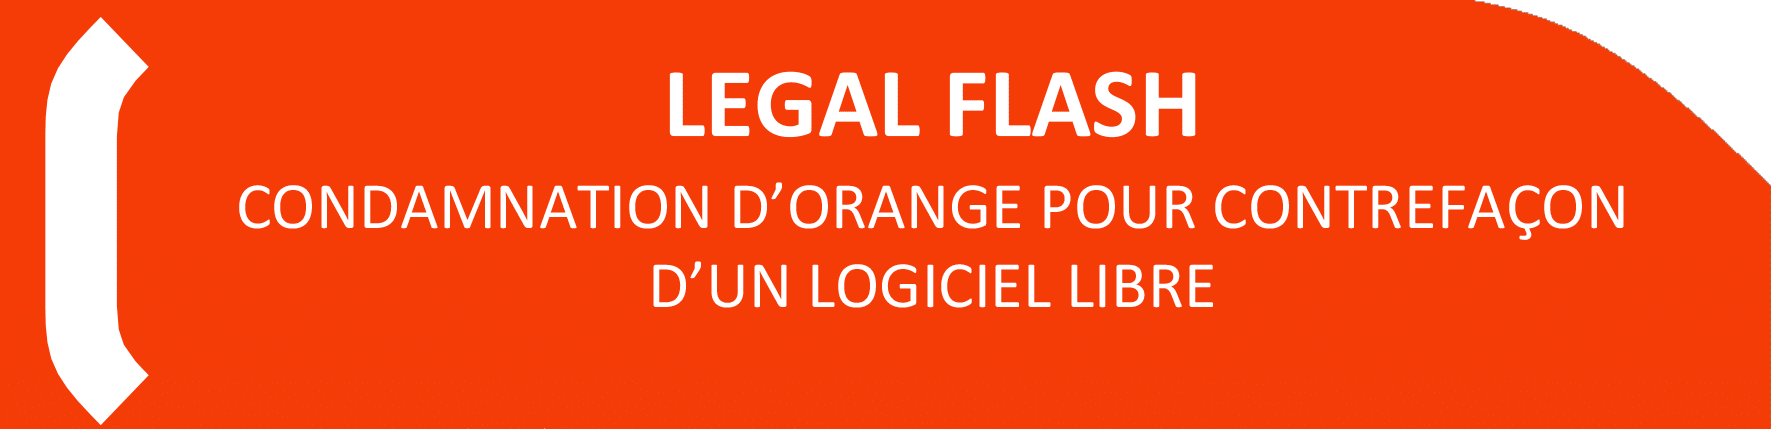 LEGAL FLASH condamnation d’orange pour contrefaçon d’un logiciel libre